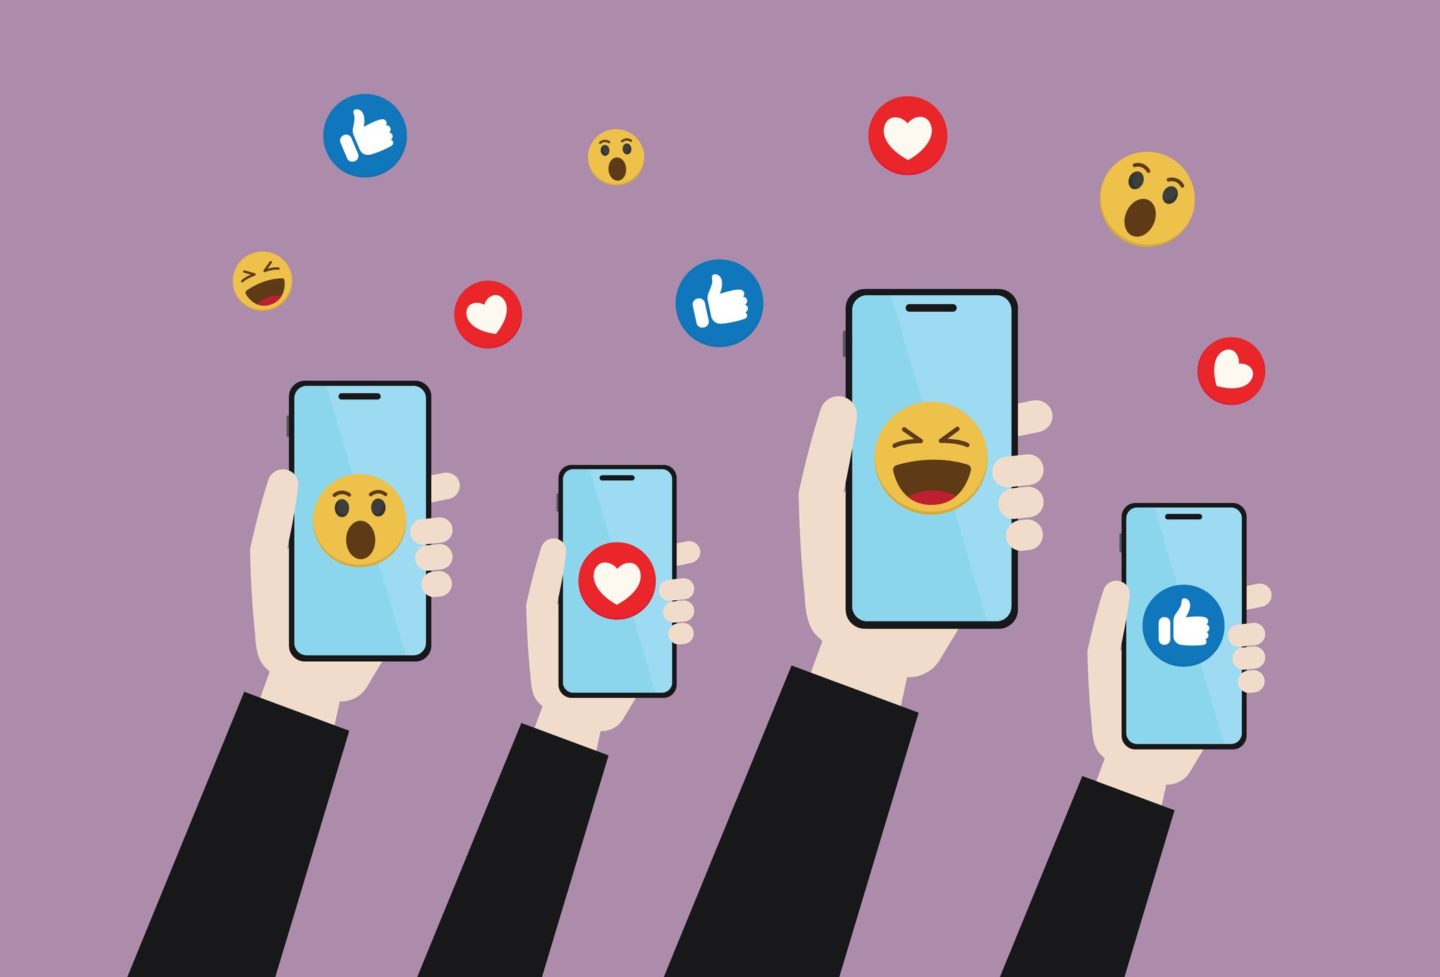 تحليل وسائل التواصل الاجتماعي: إطلاق العنان للرؤى لنجاح الأعمال